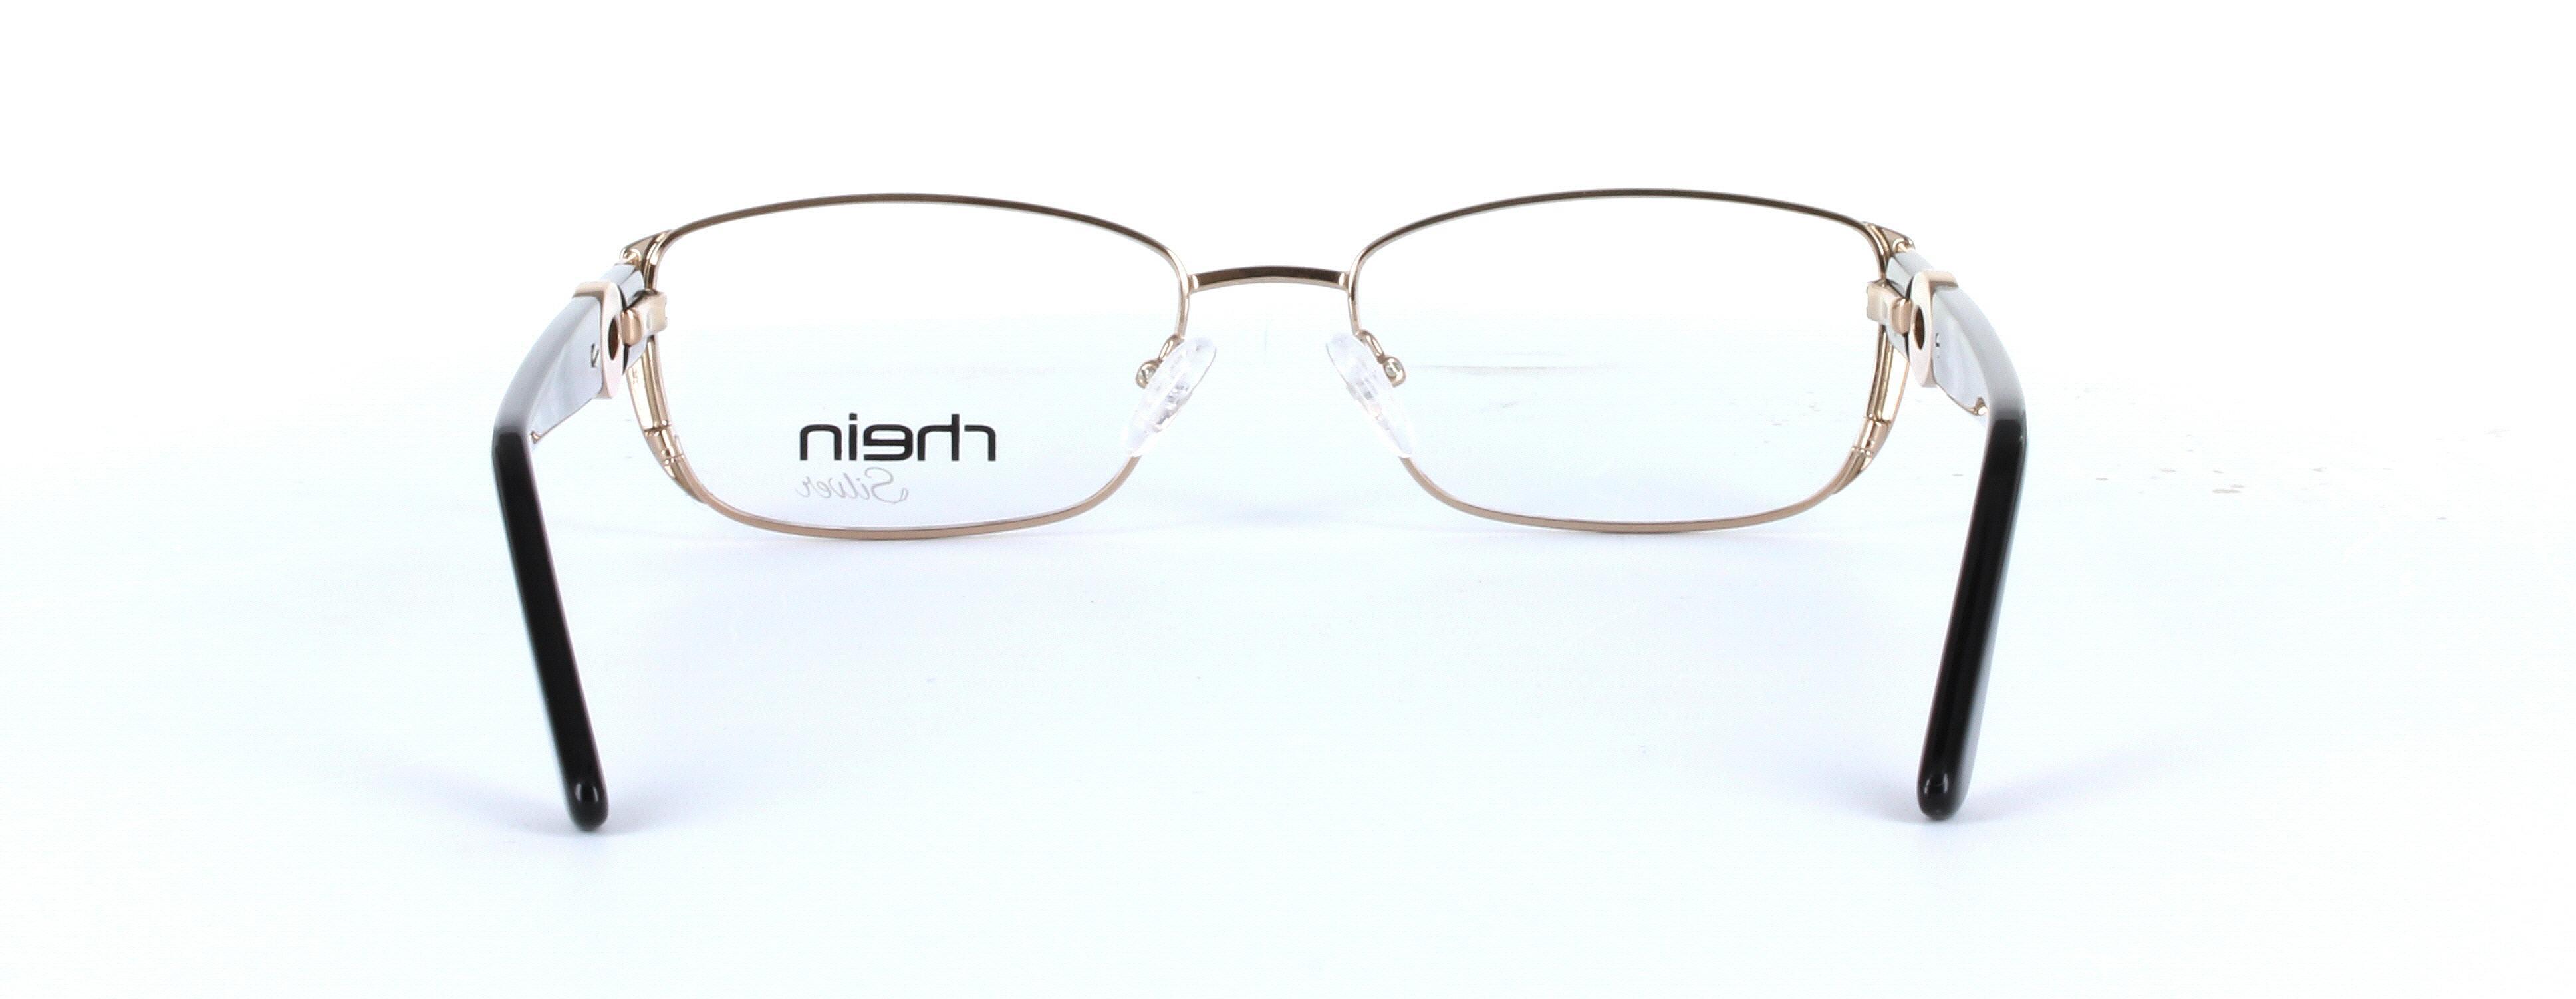 Amaris Gold Full Rim Oval Metal Glasses - Image View 3